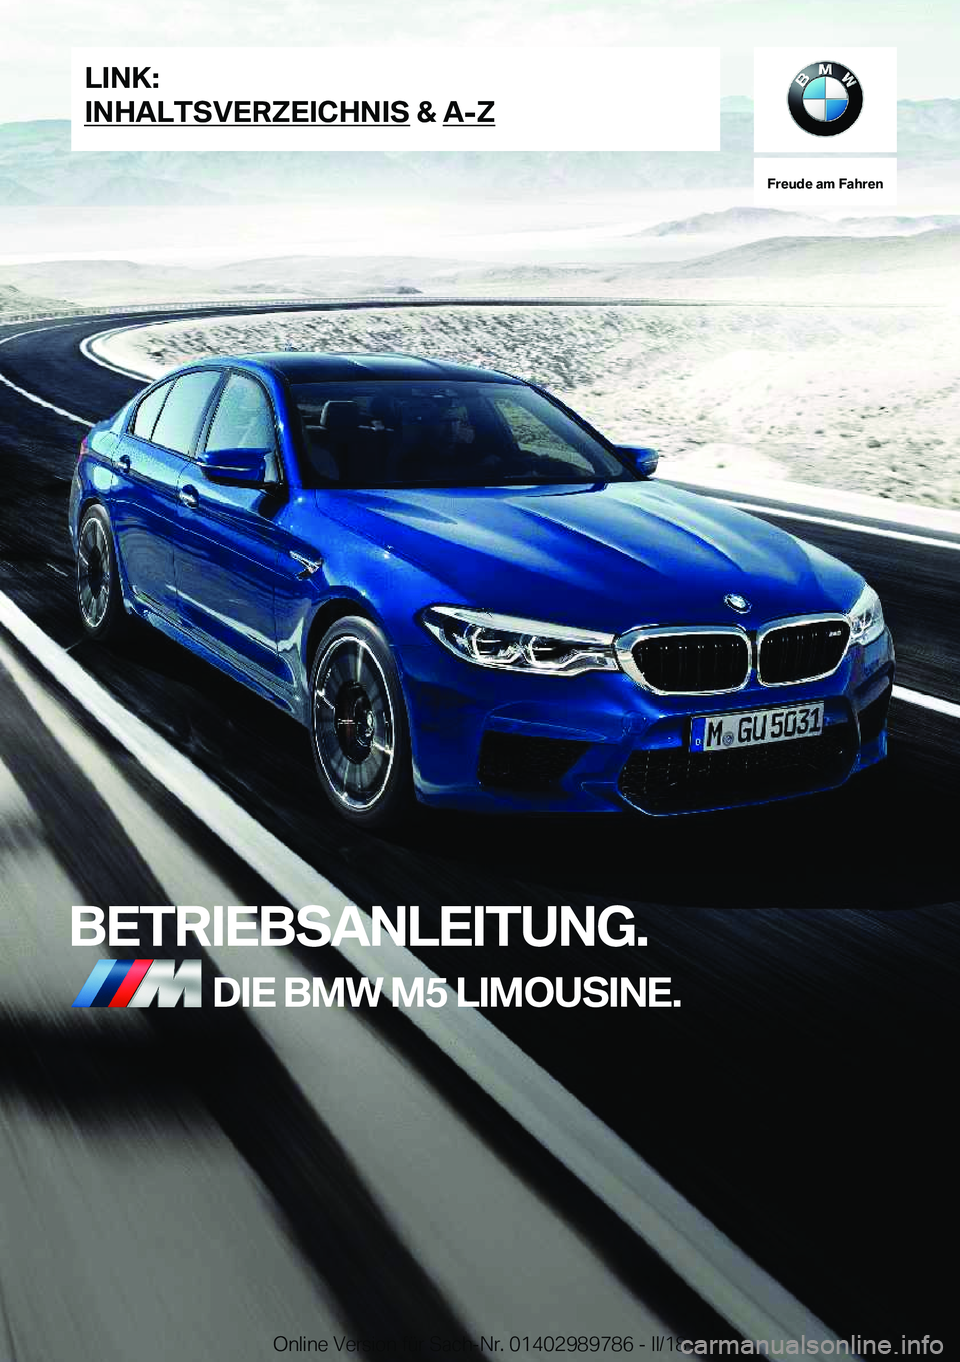 BMW M5 2018  Betriebsanleitungen (in German) �F�r�e�u�d�e��a�m��F�a�h�r�e�n
�B�E�T�R�I�E�B�S�A�N�L�E�I�T�U�N�G�.�D�I�E��B�M�W��M�5��L�I�M�O�U�S�I�N�E�.�L�I�N�K�:
�I�N�H�A�L�T�S�V�E�R�Z�E�I�C�H�N�I�S��&��A�-�Z�O�n�l�i�n�e� �V�e�r�s�i�o�n� 